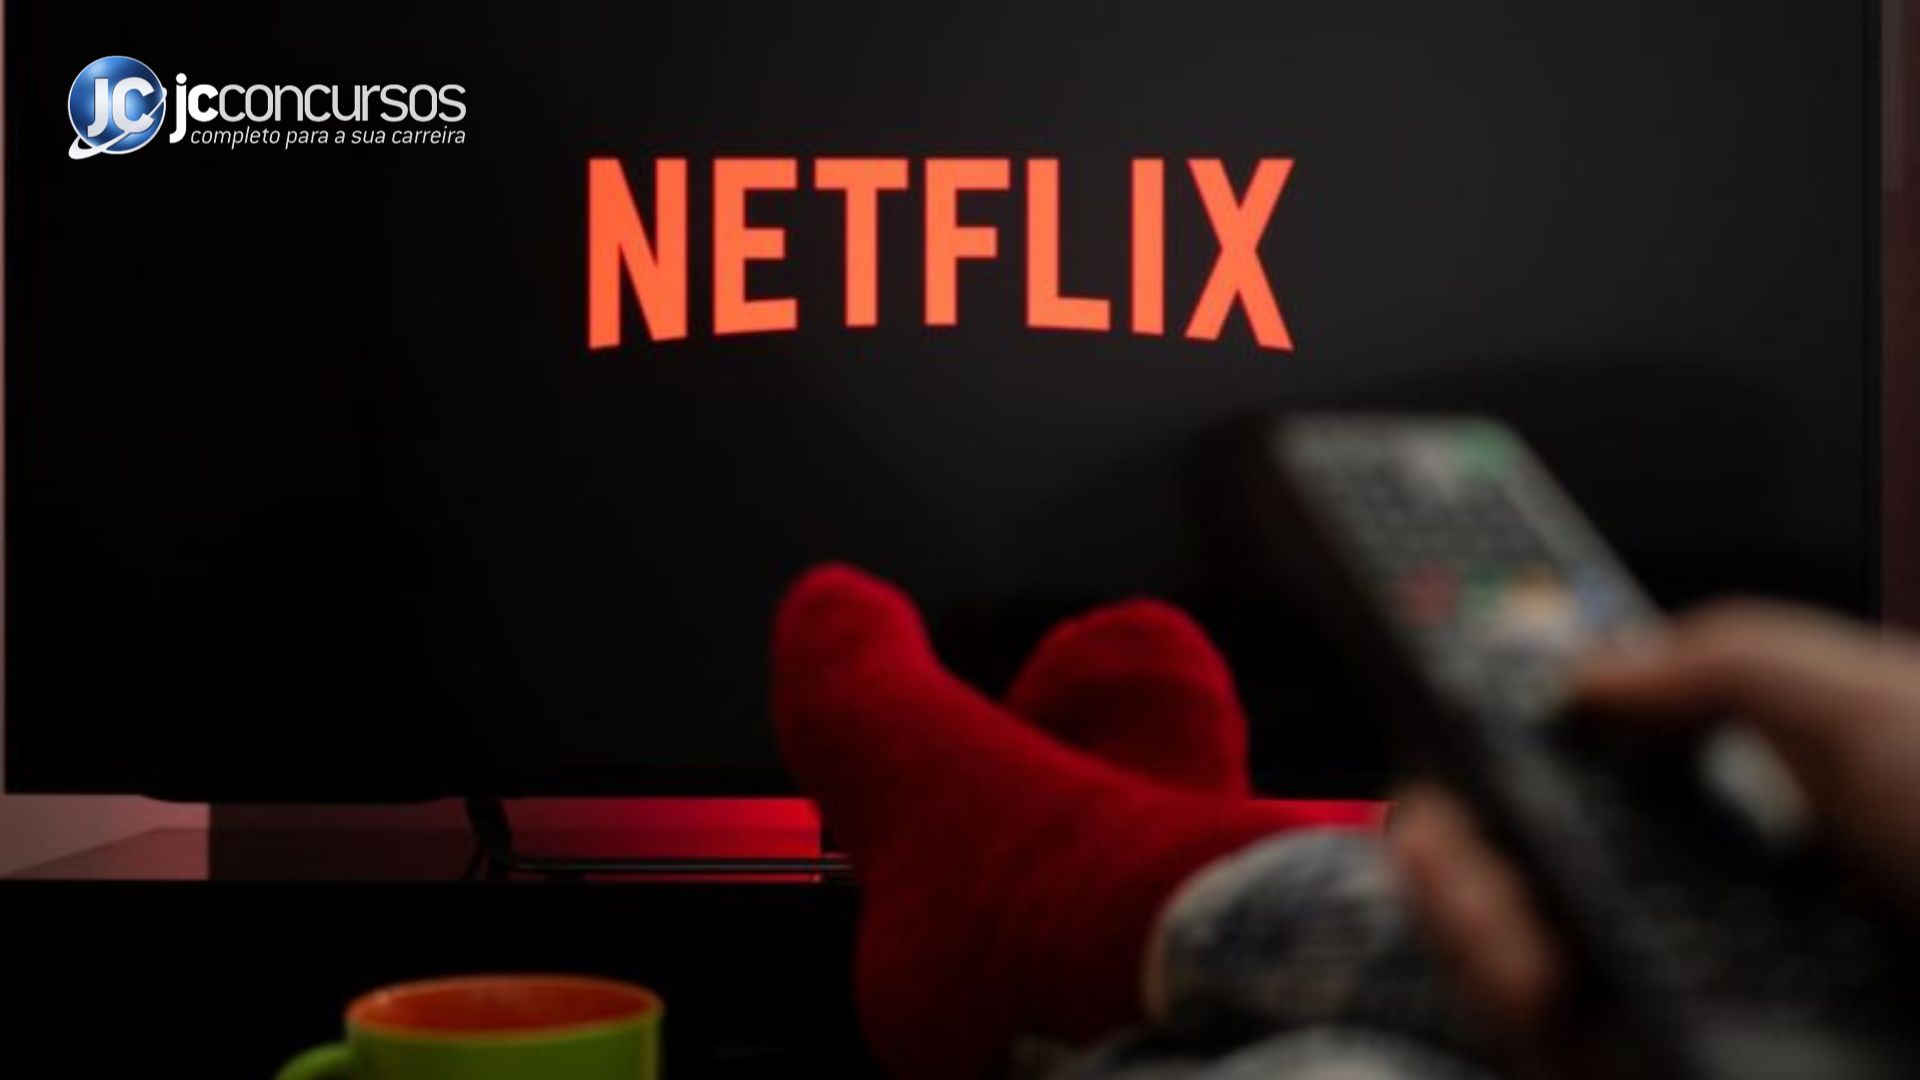 Netflix contrata comissário de bordo por R$ 2 mi ao ano - Forbes